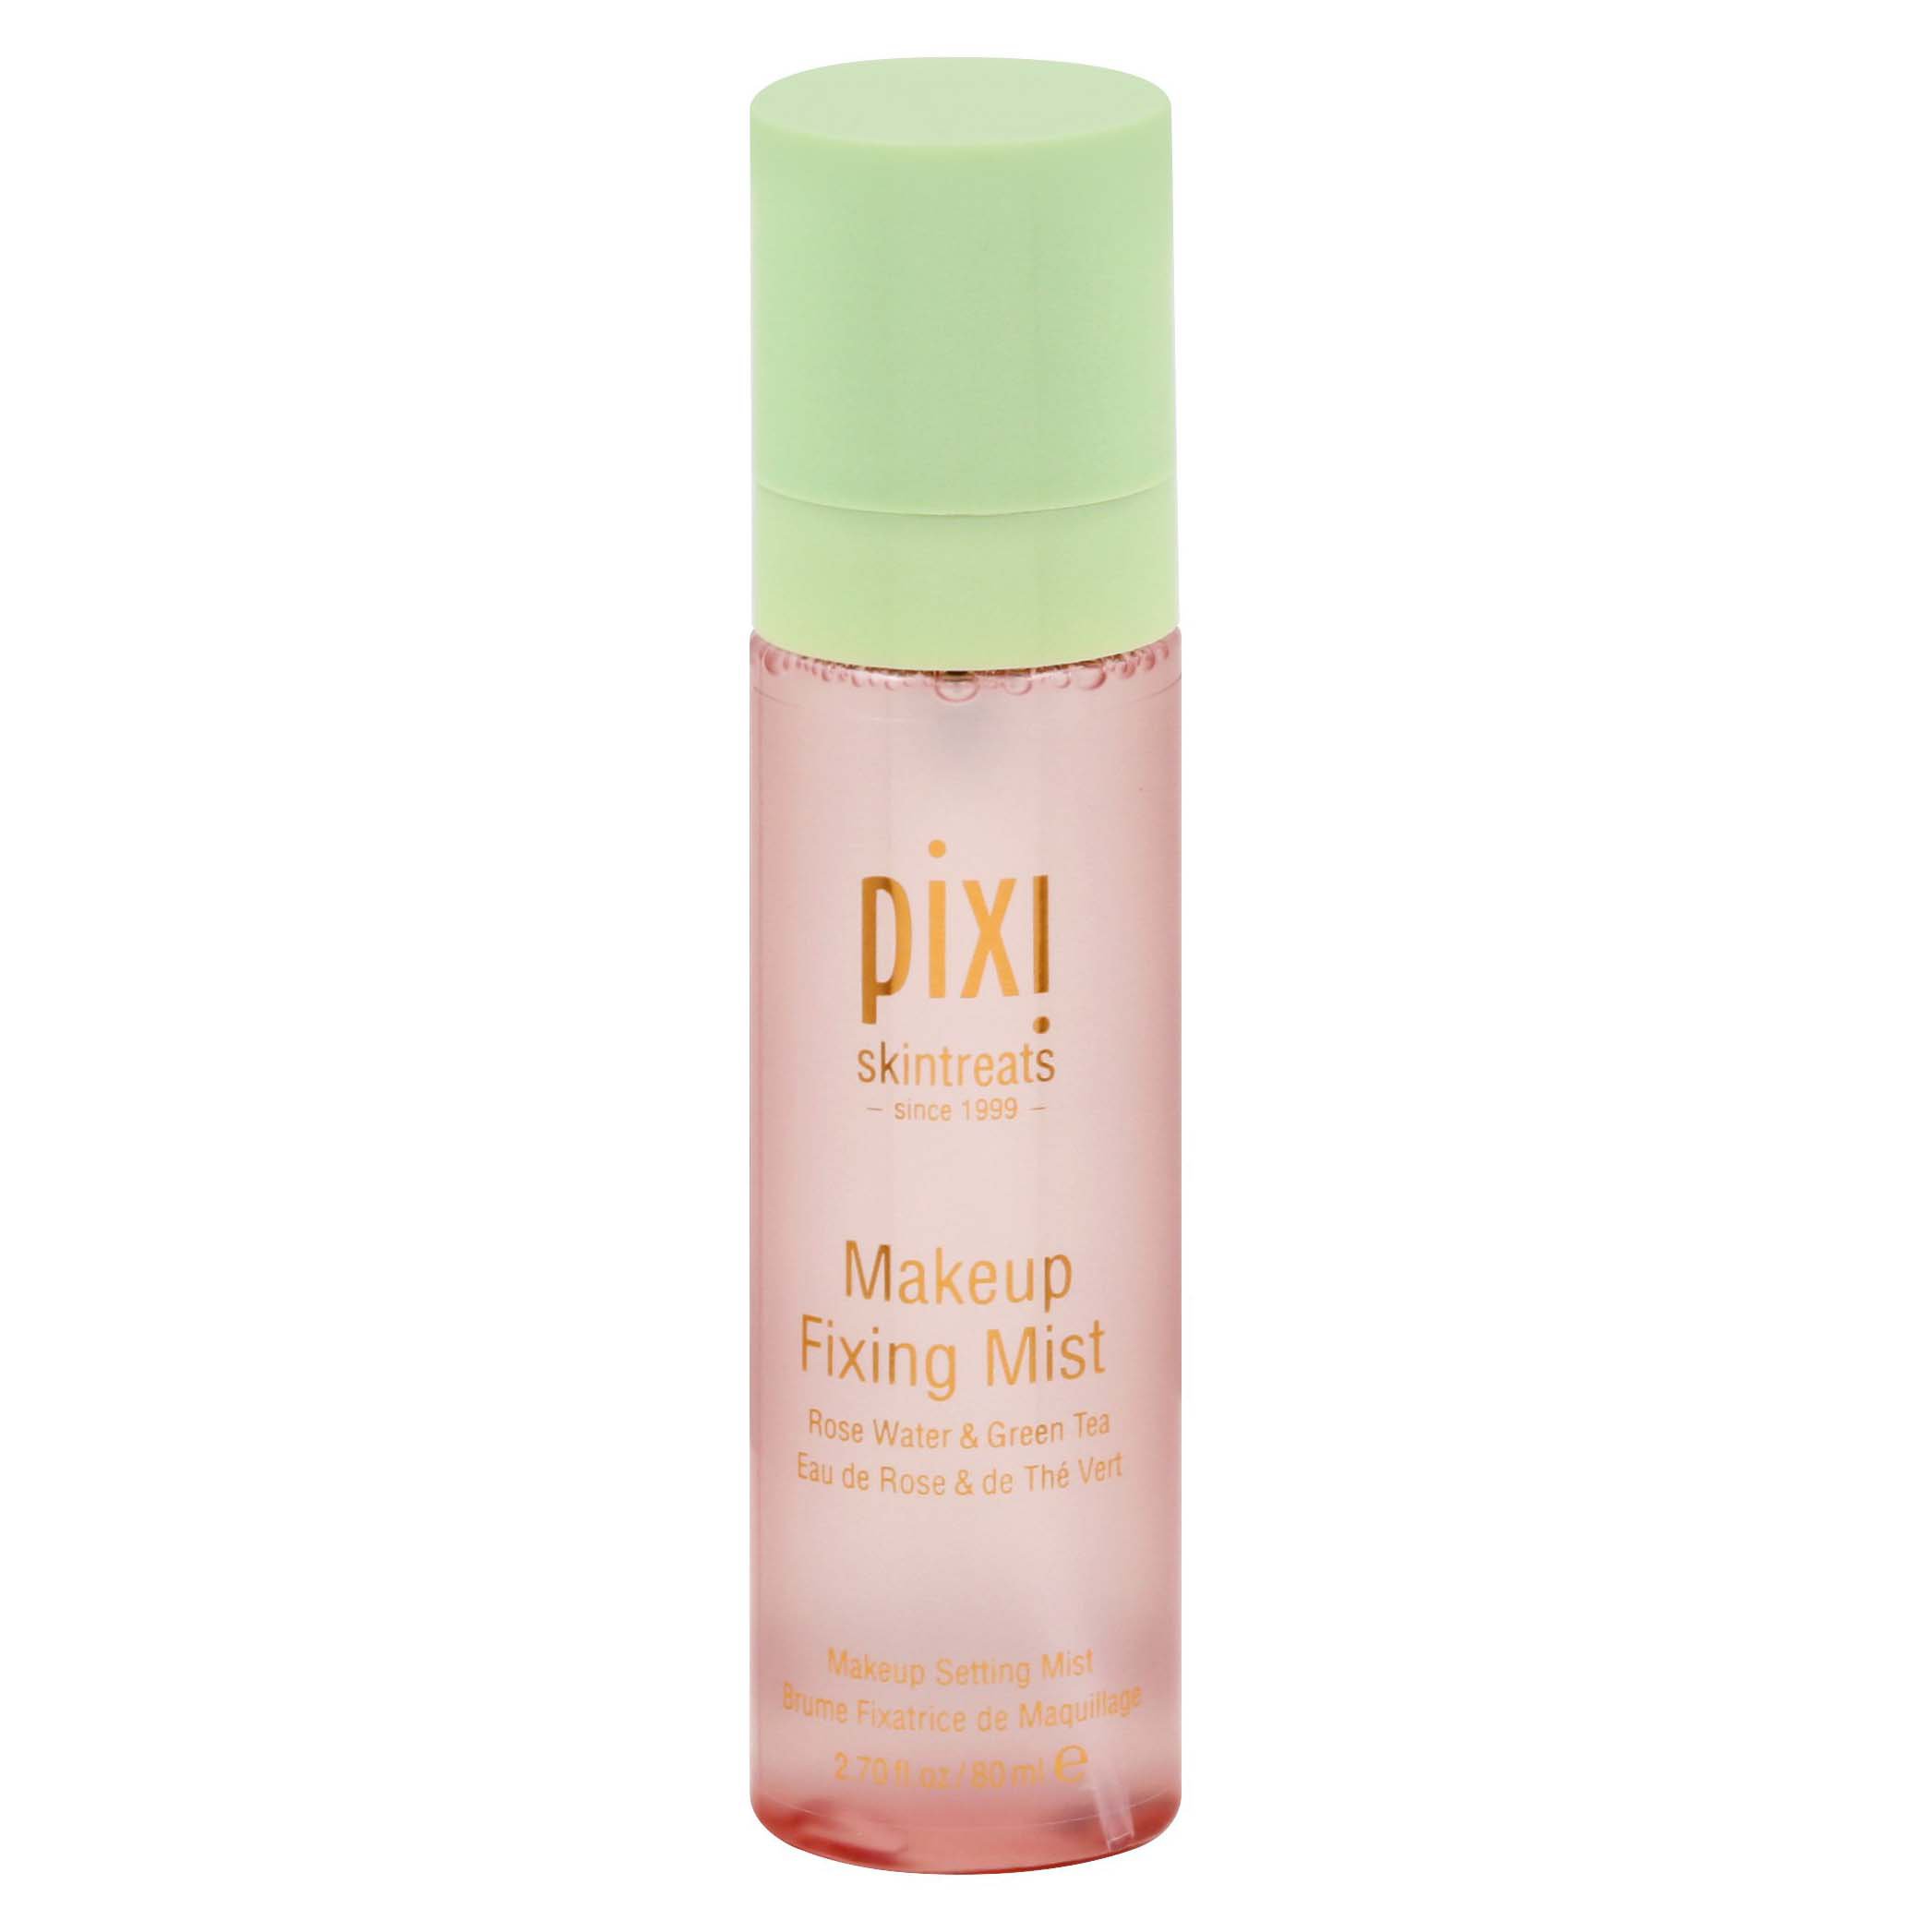 Pixi Makeup Mist - Facial Moisturizer at